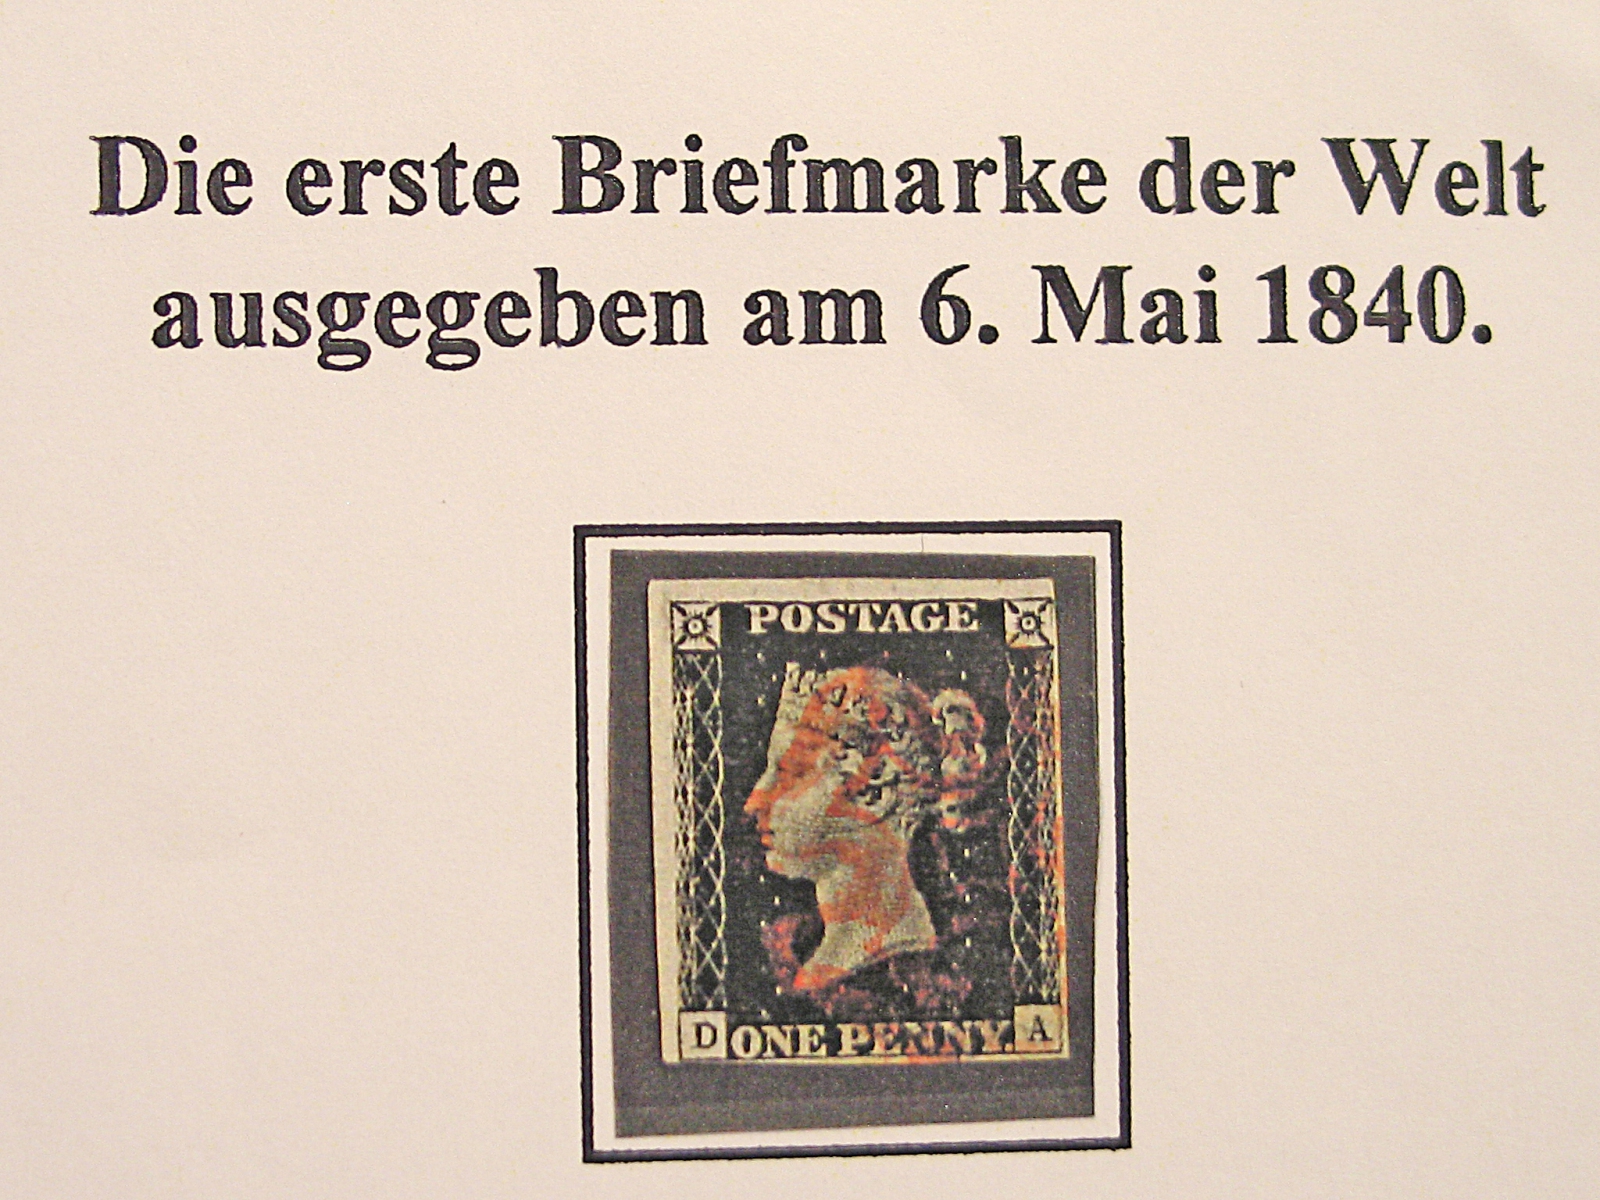 Die erste Briefmarke der Welt